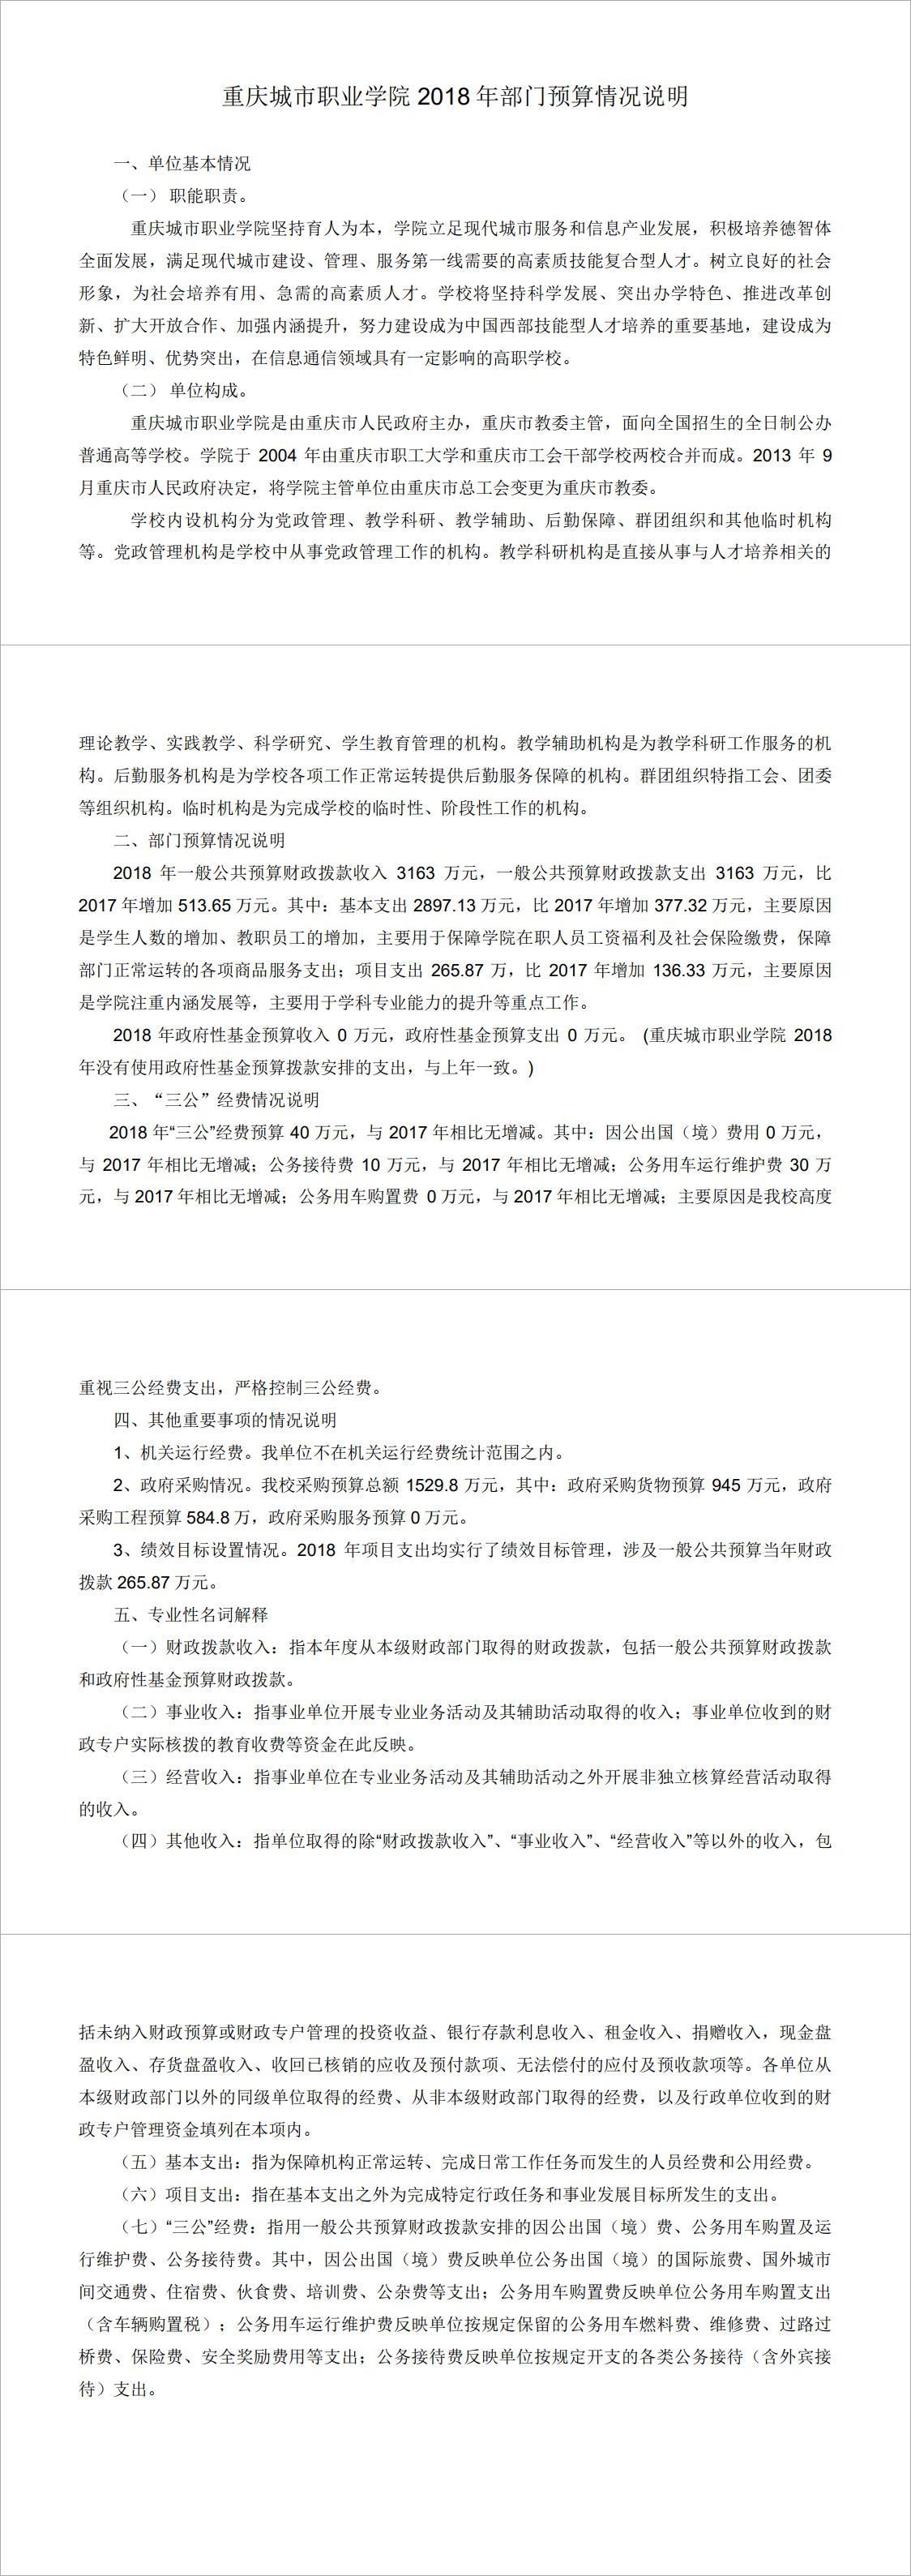 2018年部门预算情况说明（重庆城市职业学院）.jpg